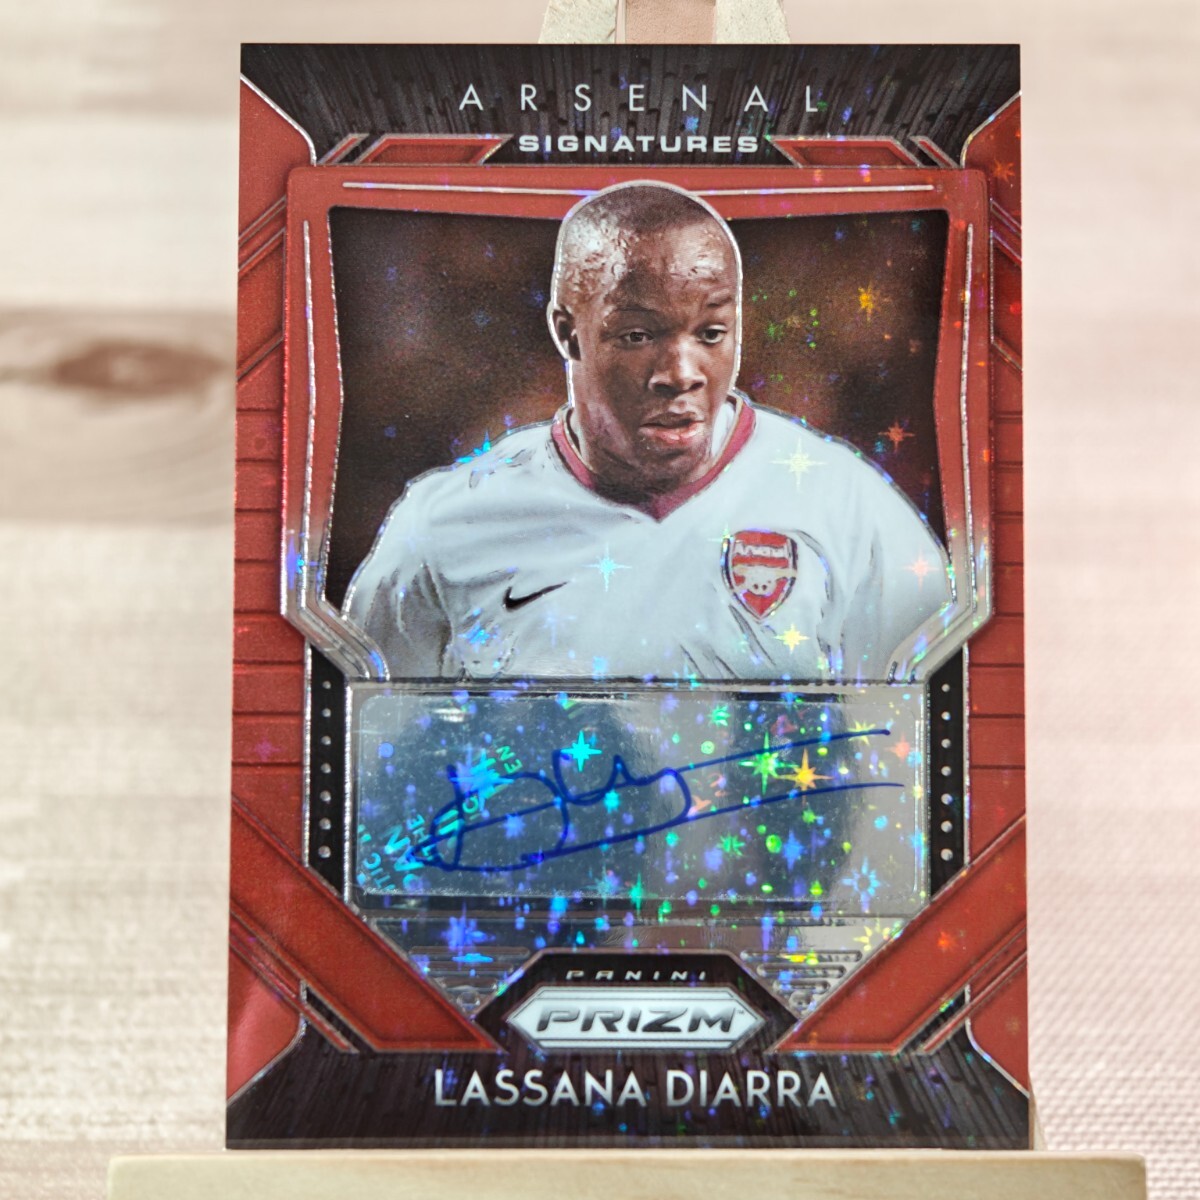 ラッサナ・ディアッラ 2020-21 Panini Prizm EPL Lassana Diarra Red Stars Auto Autograph Arsenal 直筆サインカードの画像1